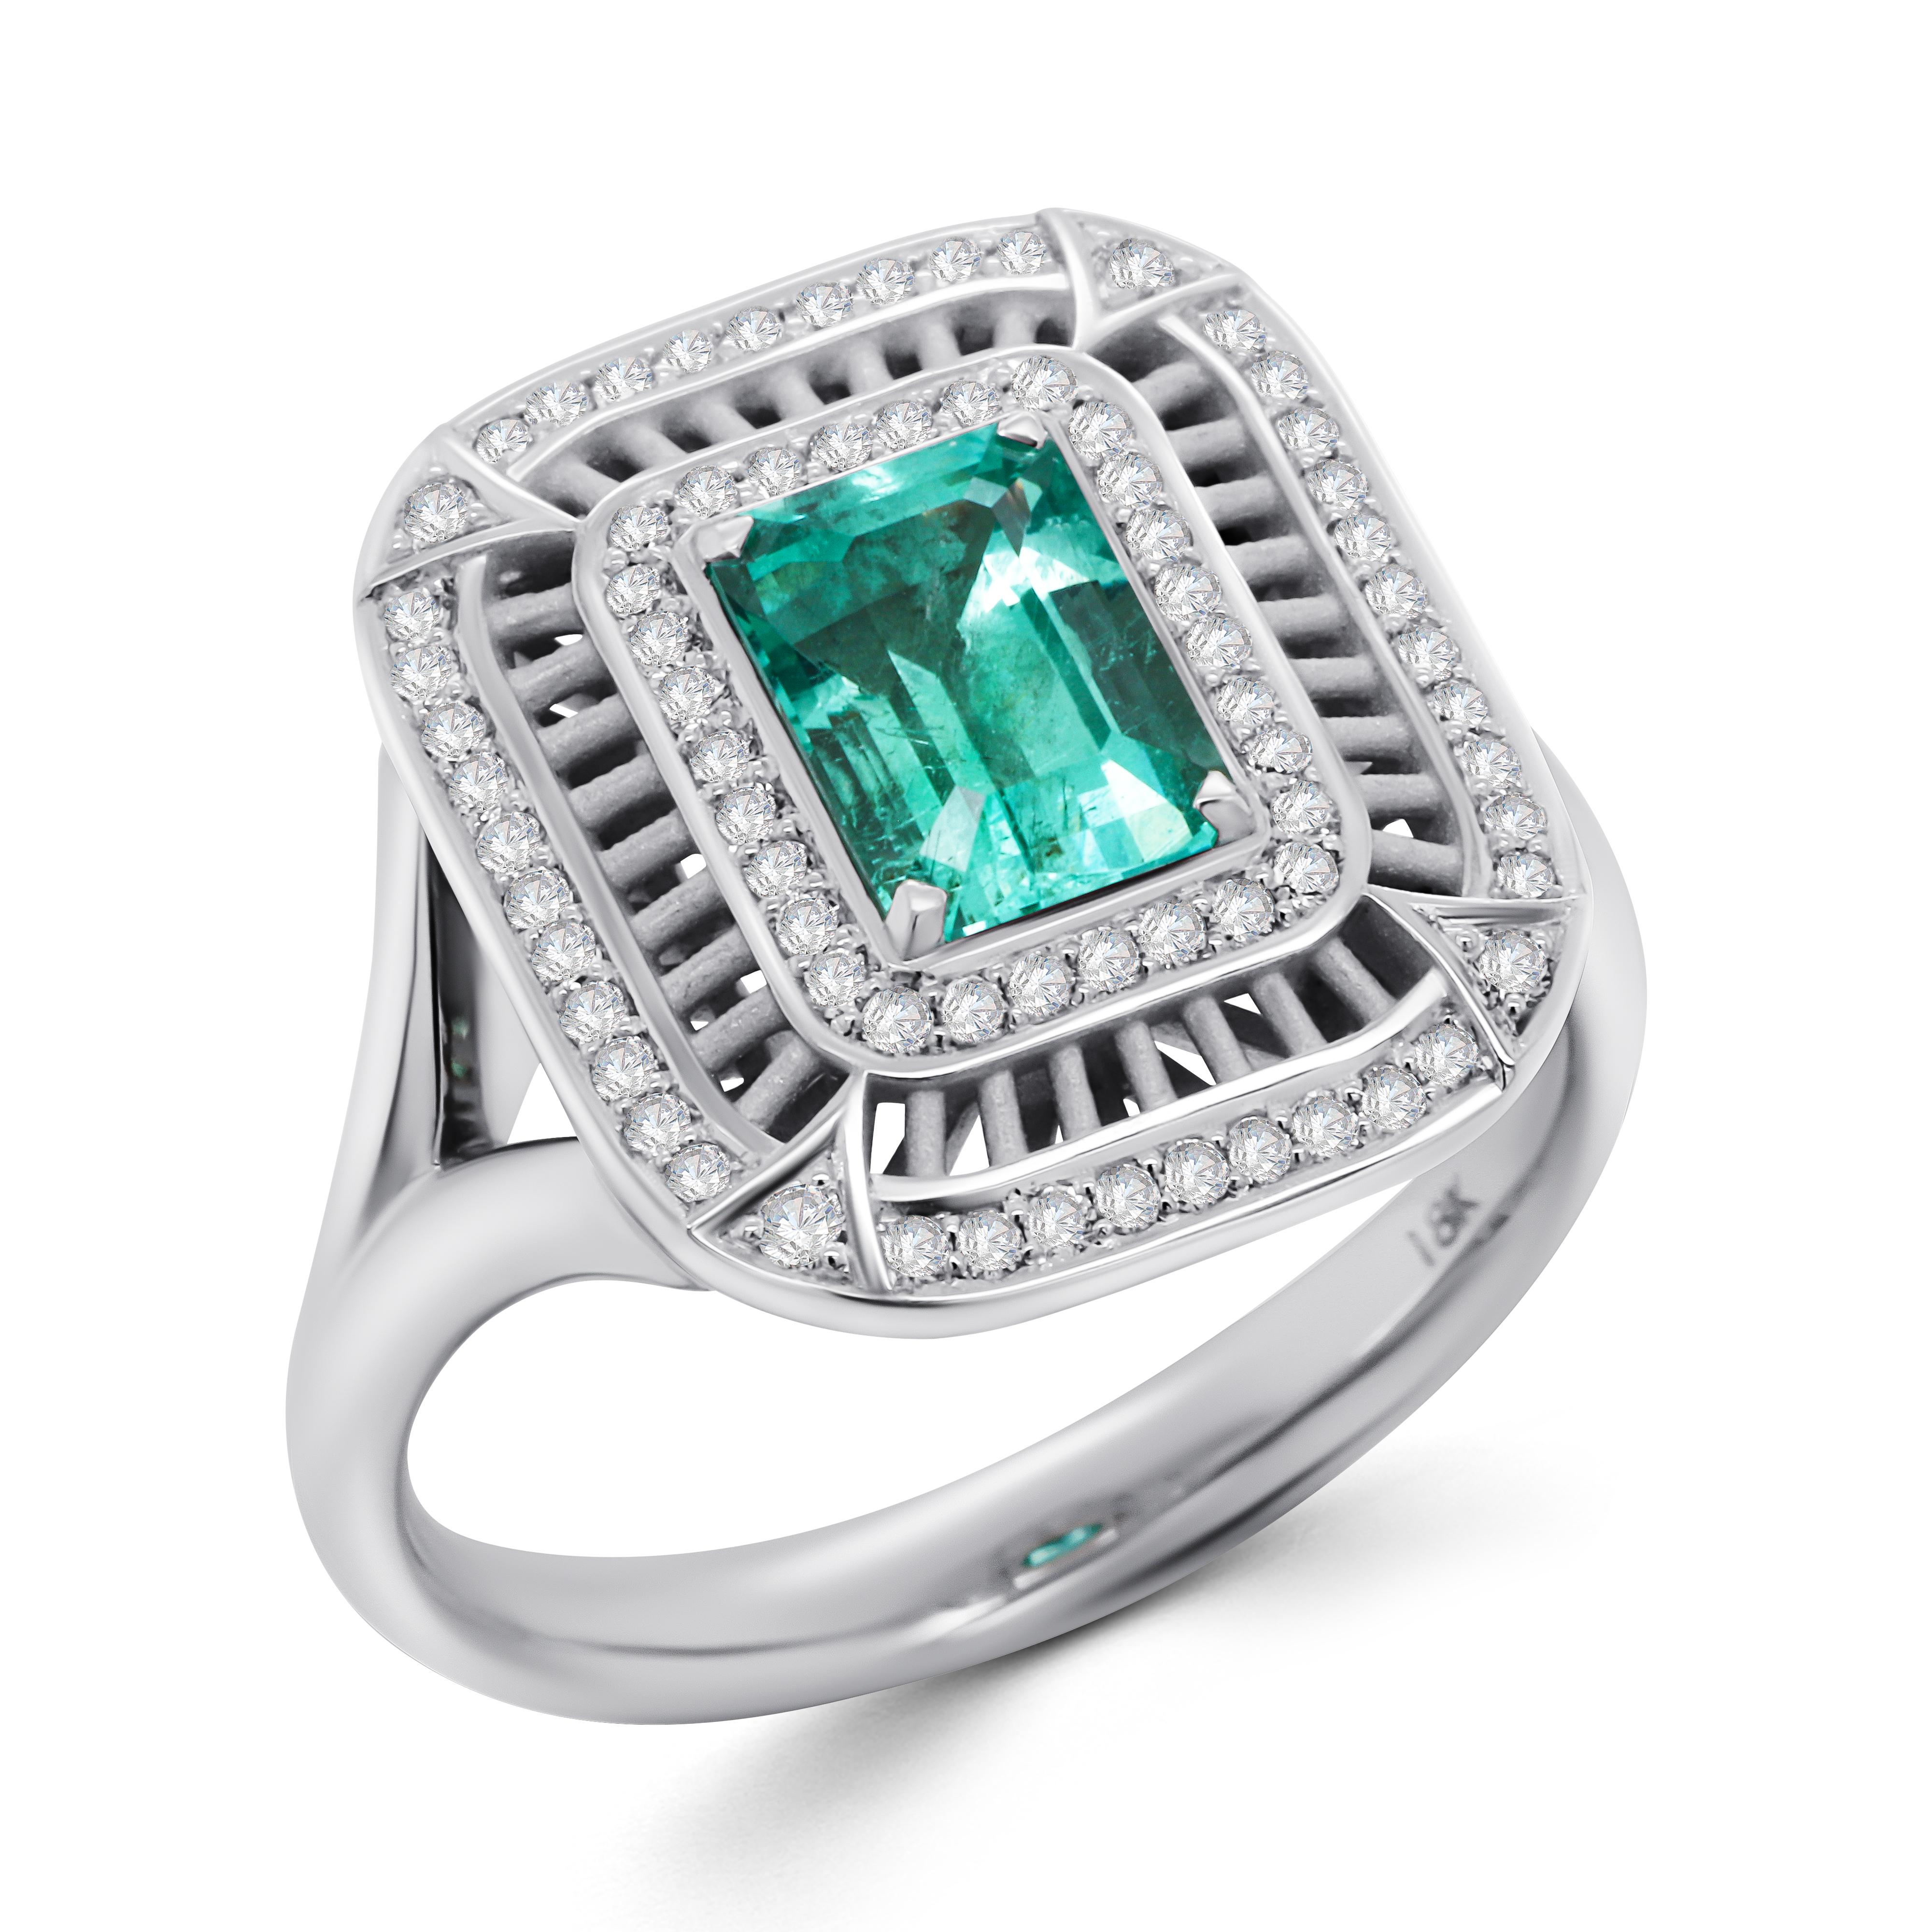 Ein zeitloses Design, das nie langweilig wird und auch nach Jahren noch stilvoll ist. 
Der Ring mit einem Smaragd in der Mitte und zwei Reihen von Diamanten. Der Smaragd stammt aus dem Uralgebirge in Russland, das für seine seltenen Vorkommen an